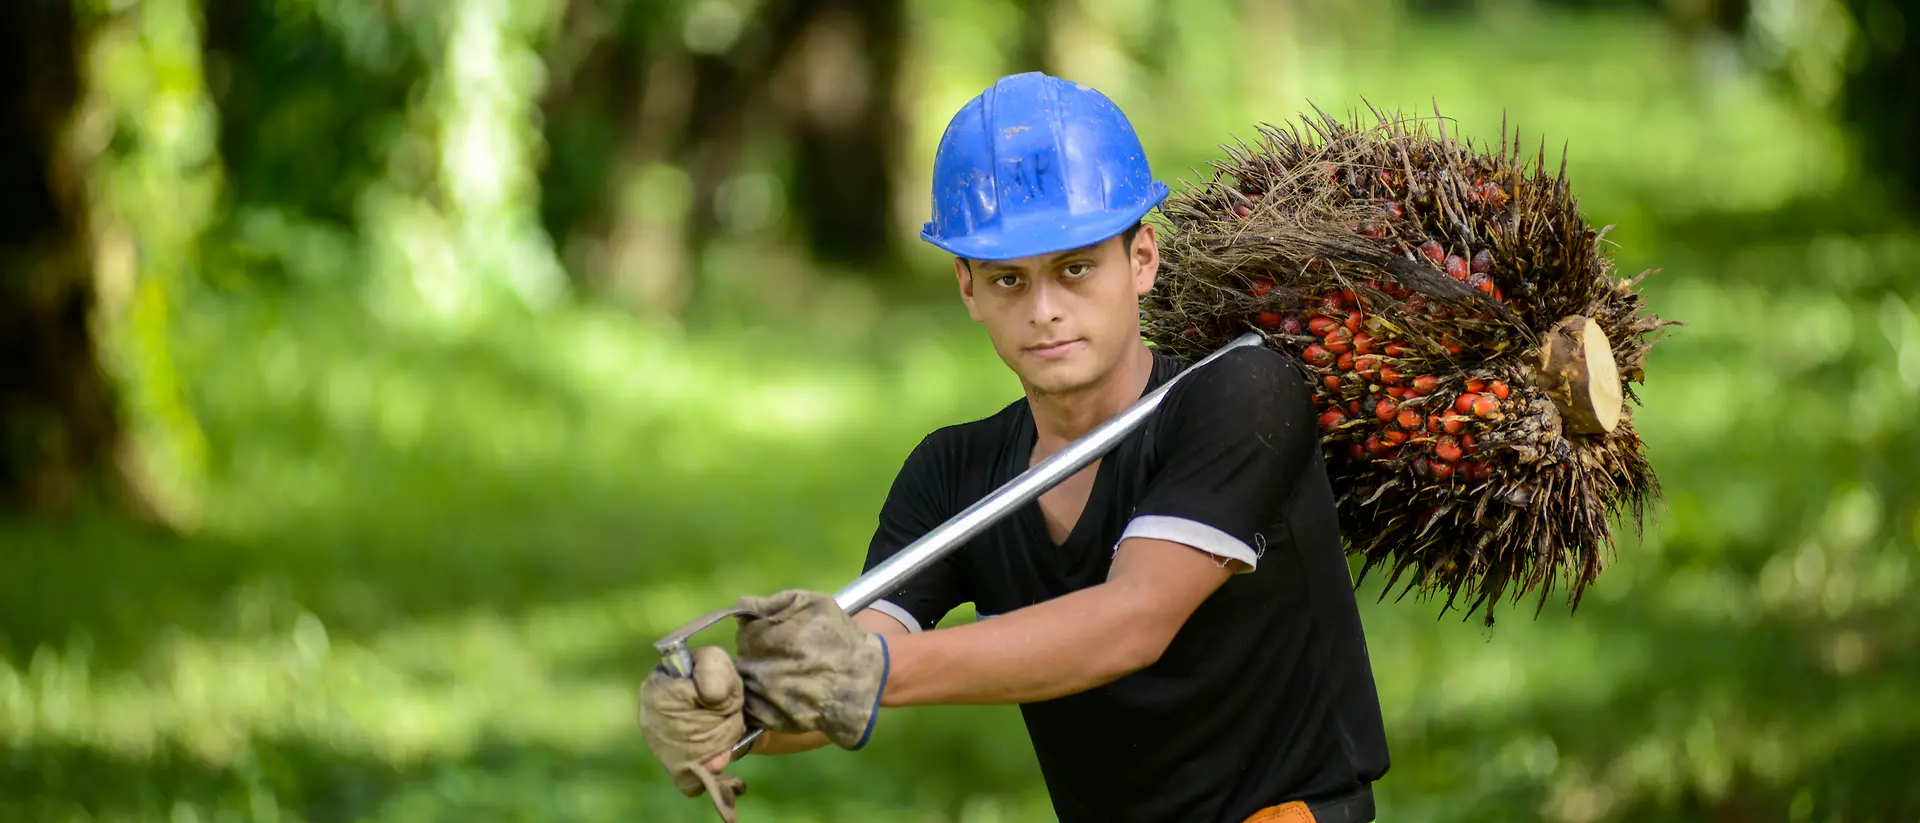 Trabajador con casco azul, transportando frutos de palmera en una plantación de palmeras